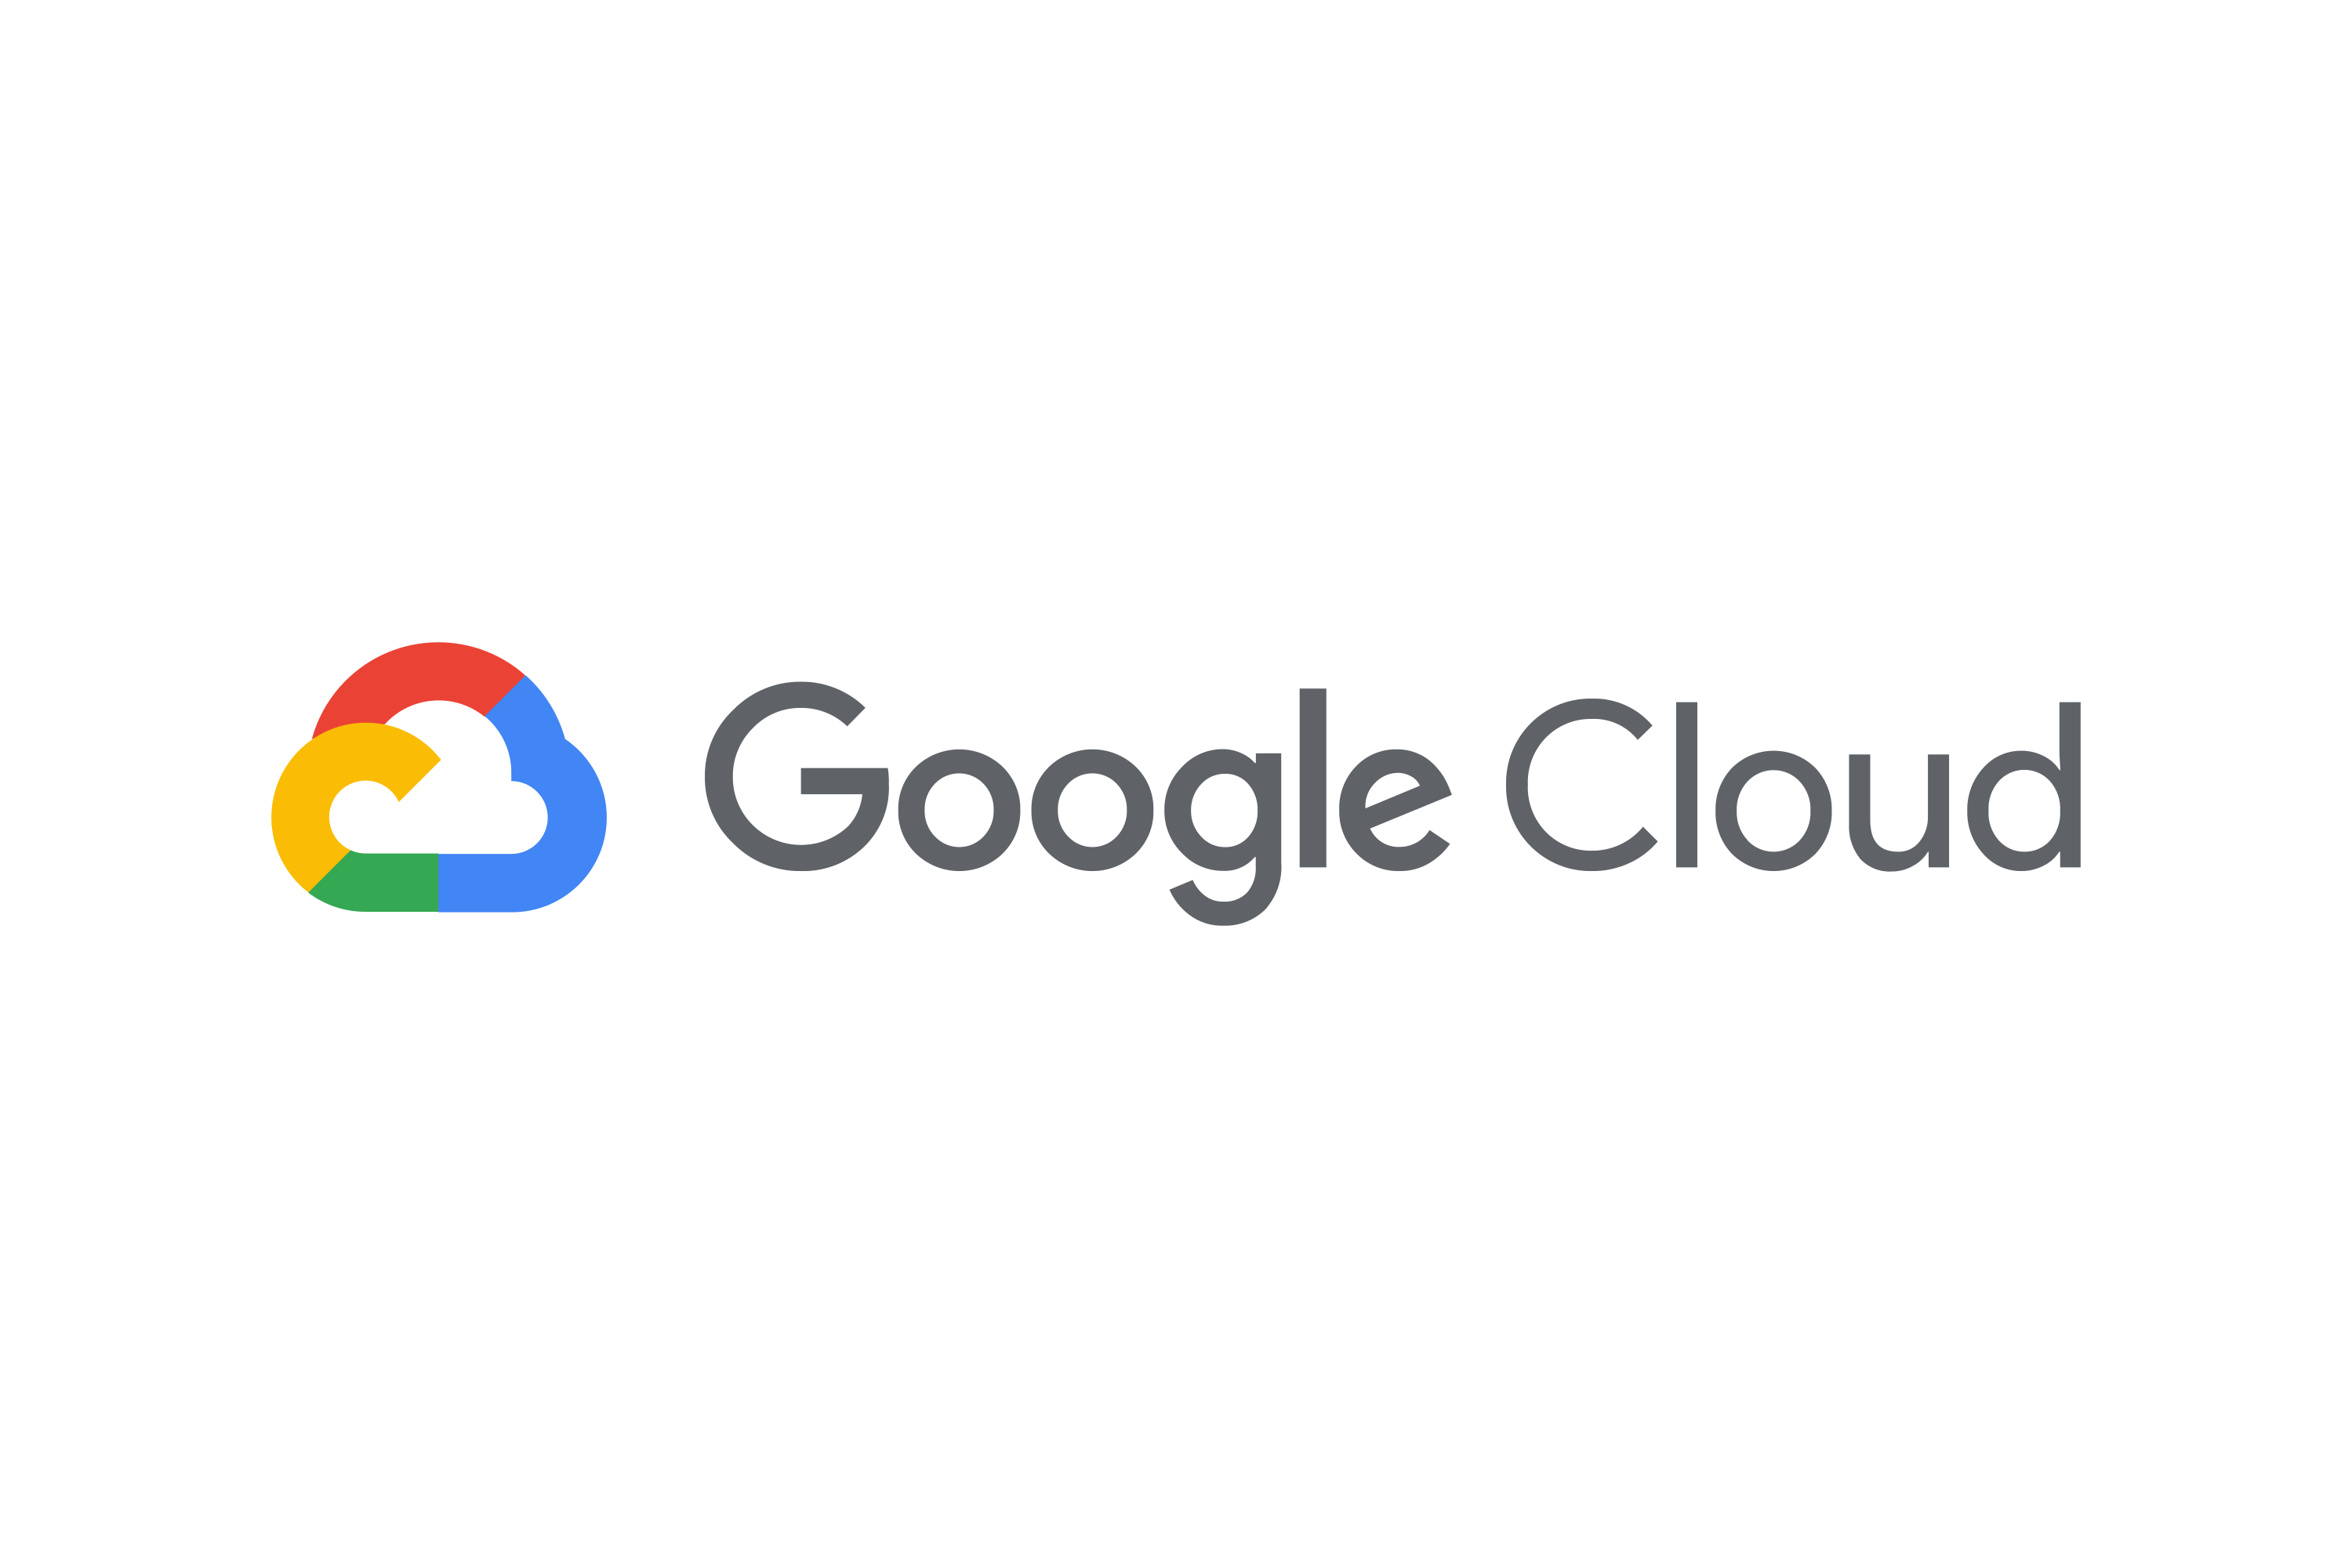 google cloud pic